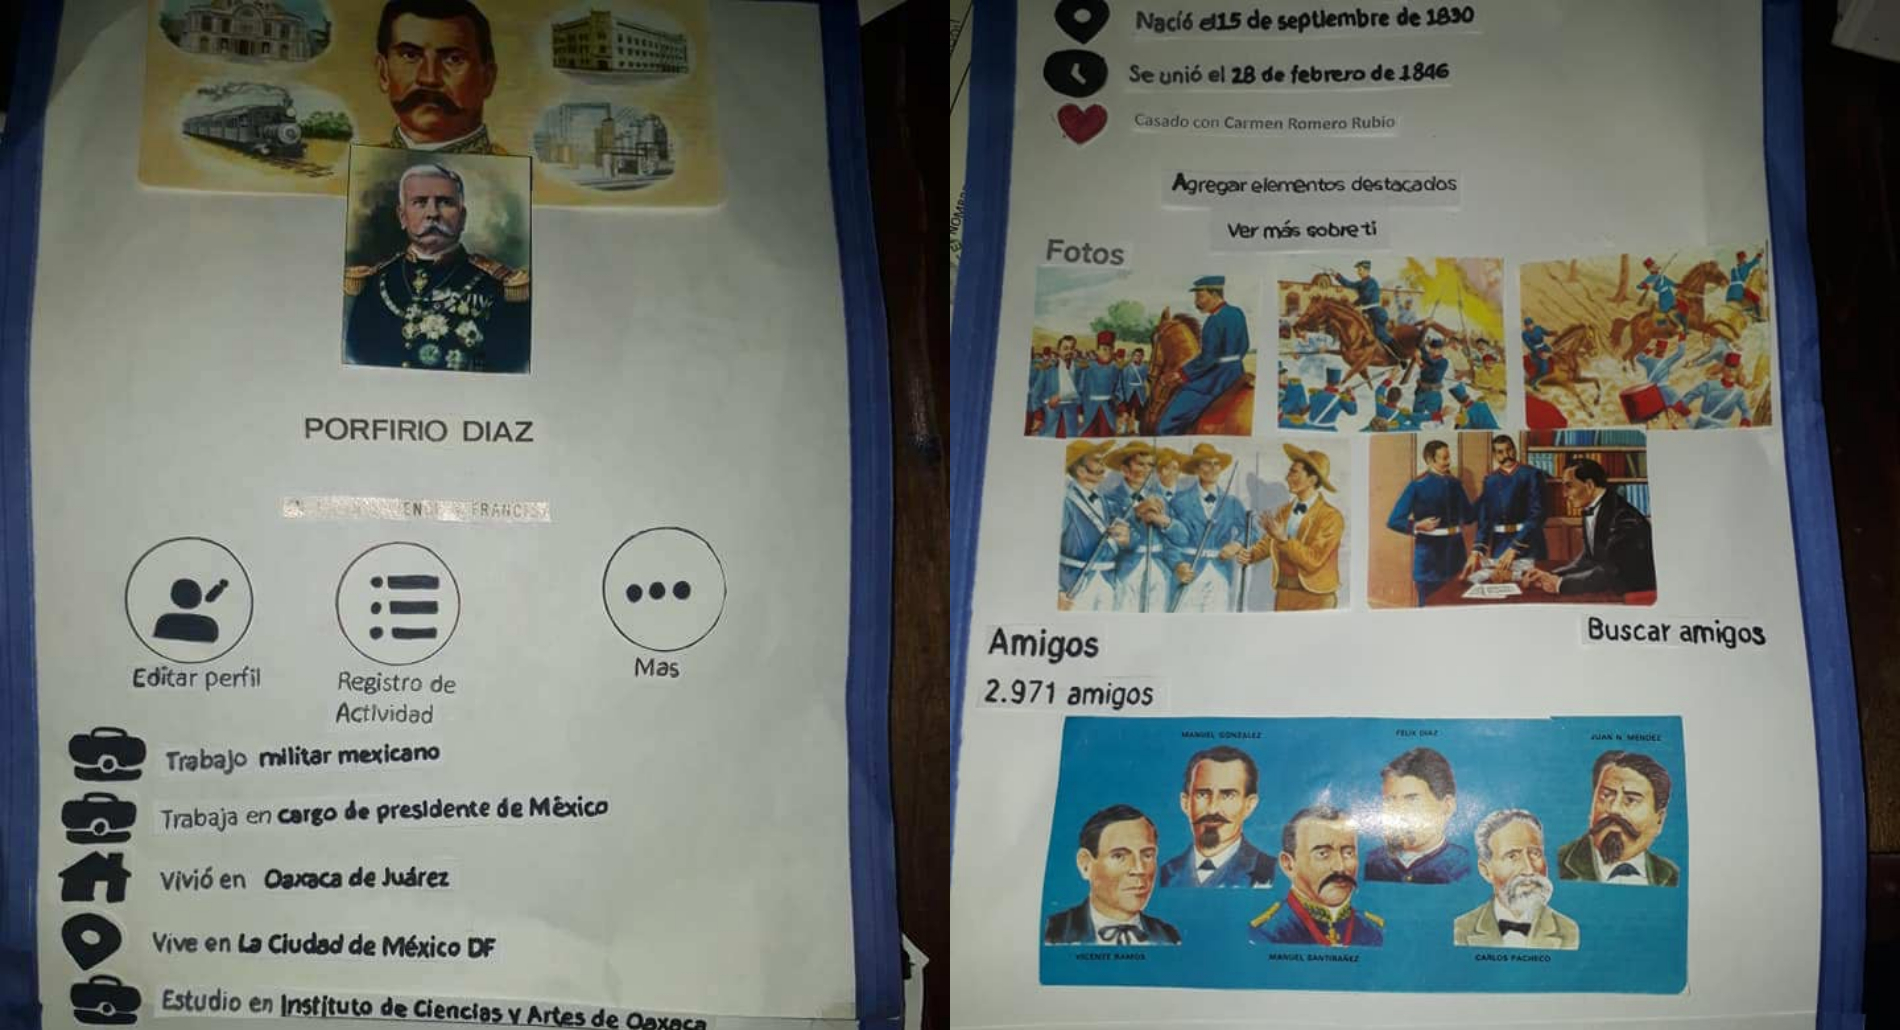 Niño presenta biografía de Porfirio Díaz con imágenes de un perfil de Facebook